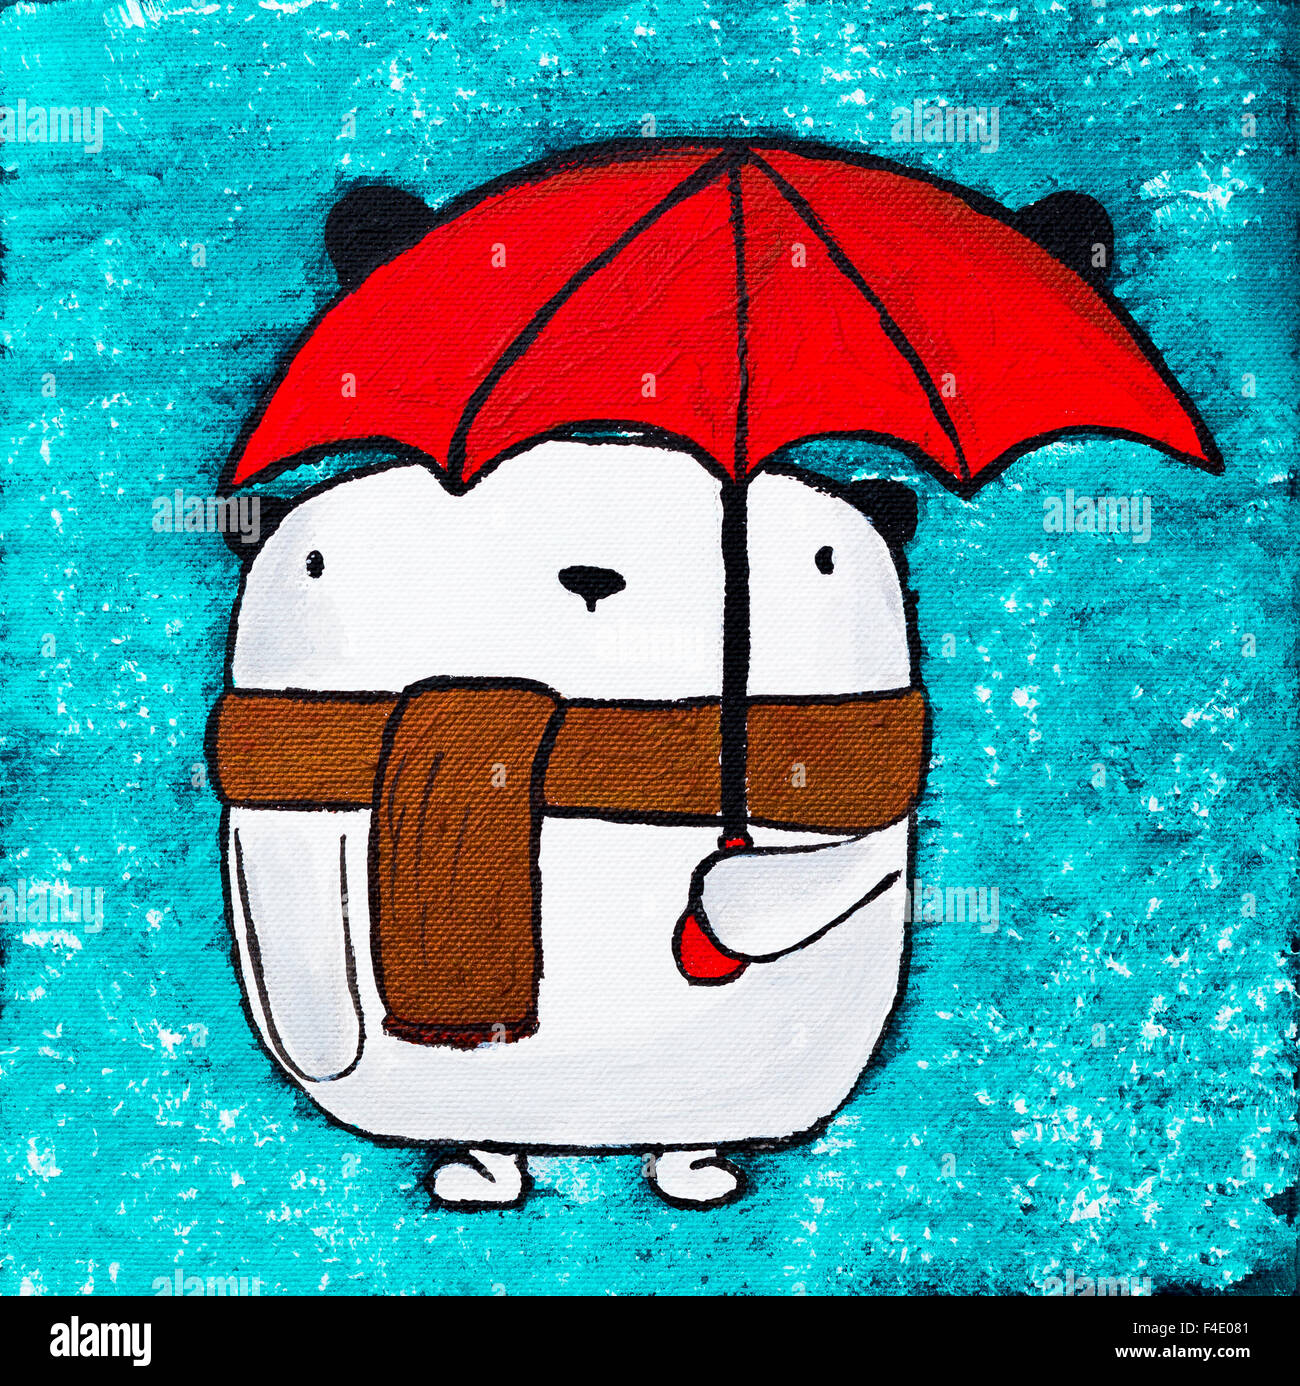 Malen Sie Acryl Bild von White Bear mit roten Regenschirm auf grünem  Hintergrund. Bild auf Leinwand Pinsel und Farben gemalt Stockfotografie -  Alamy